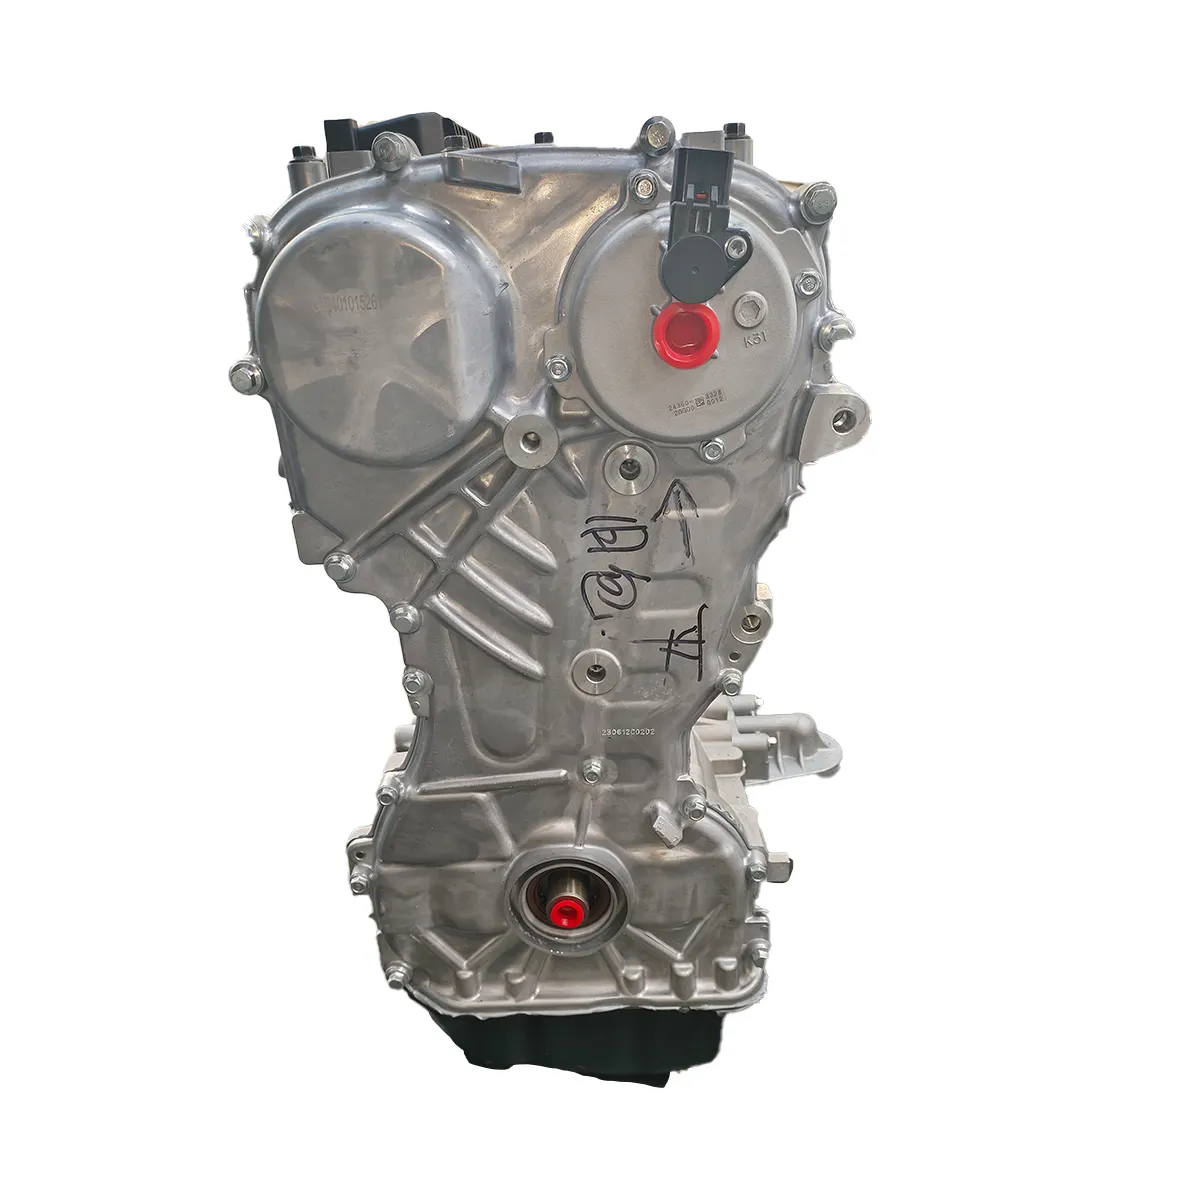 SCHLUSSVERKAUF hochwertiger neuer Motor 2.4 GDi G4KJ Motor für Kia Optima Hyundai IX45 Tucson Sonata auf Lager Motormontage